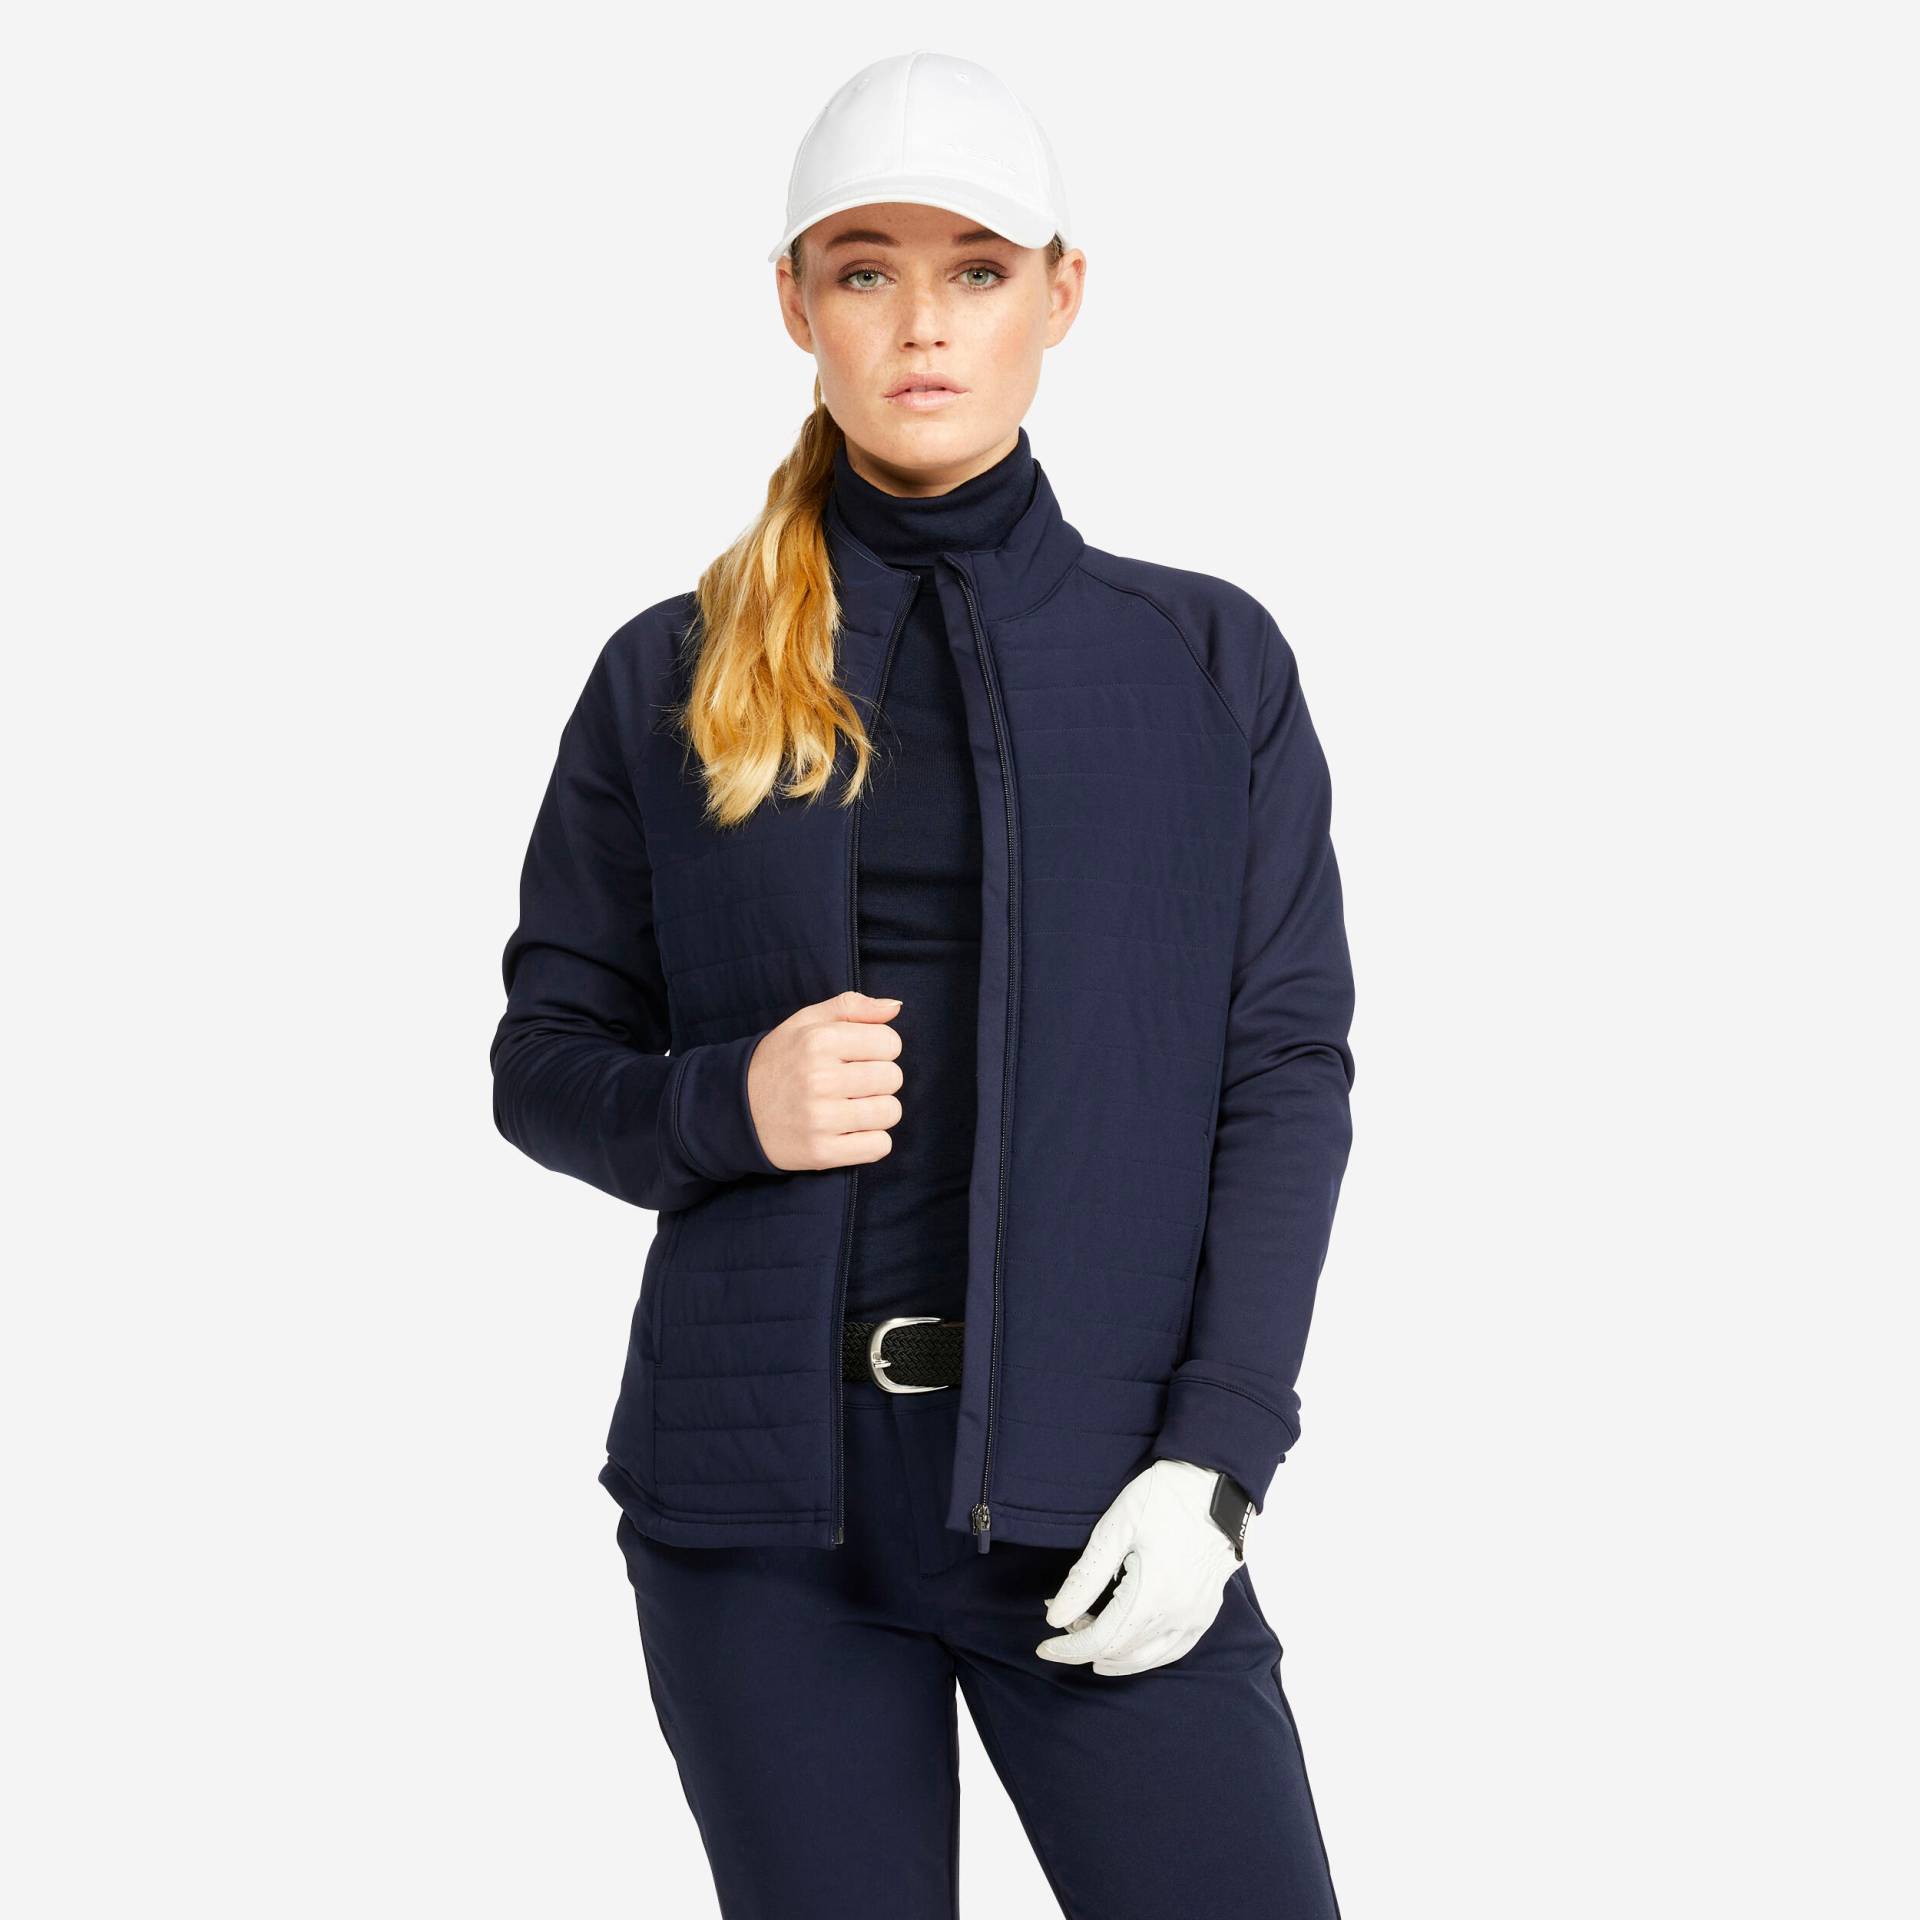 Damen Golf Winterjacke - CW500 dunkelblau von INESIS